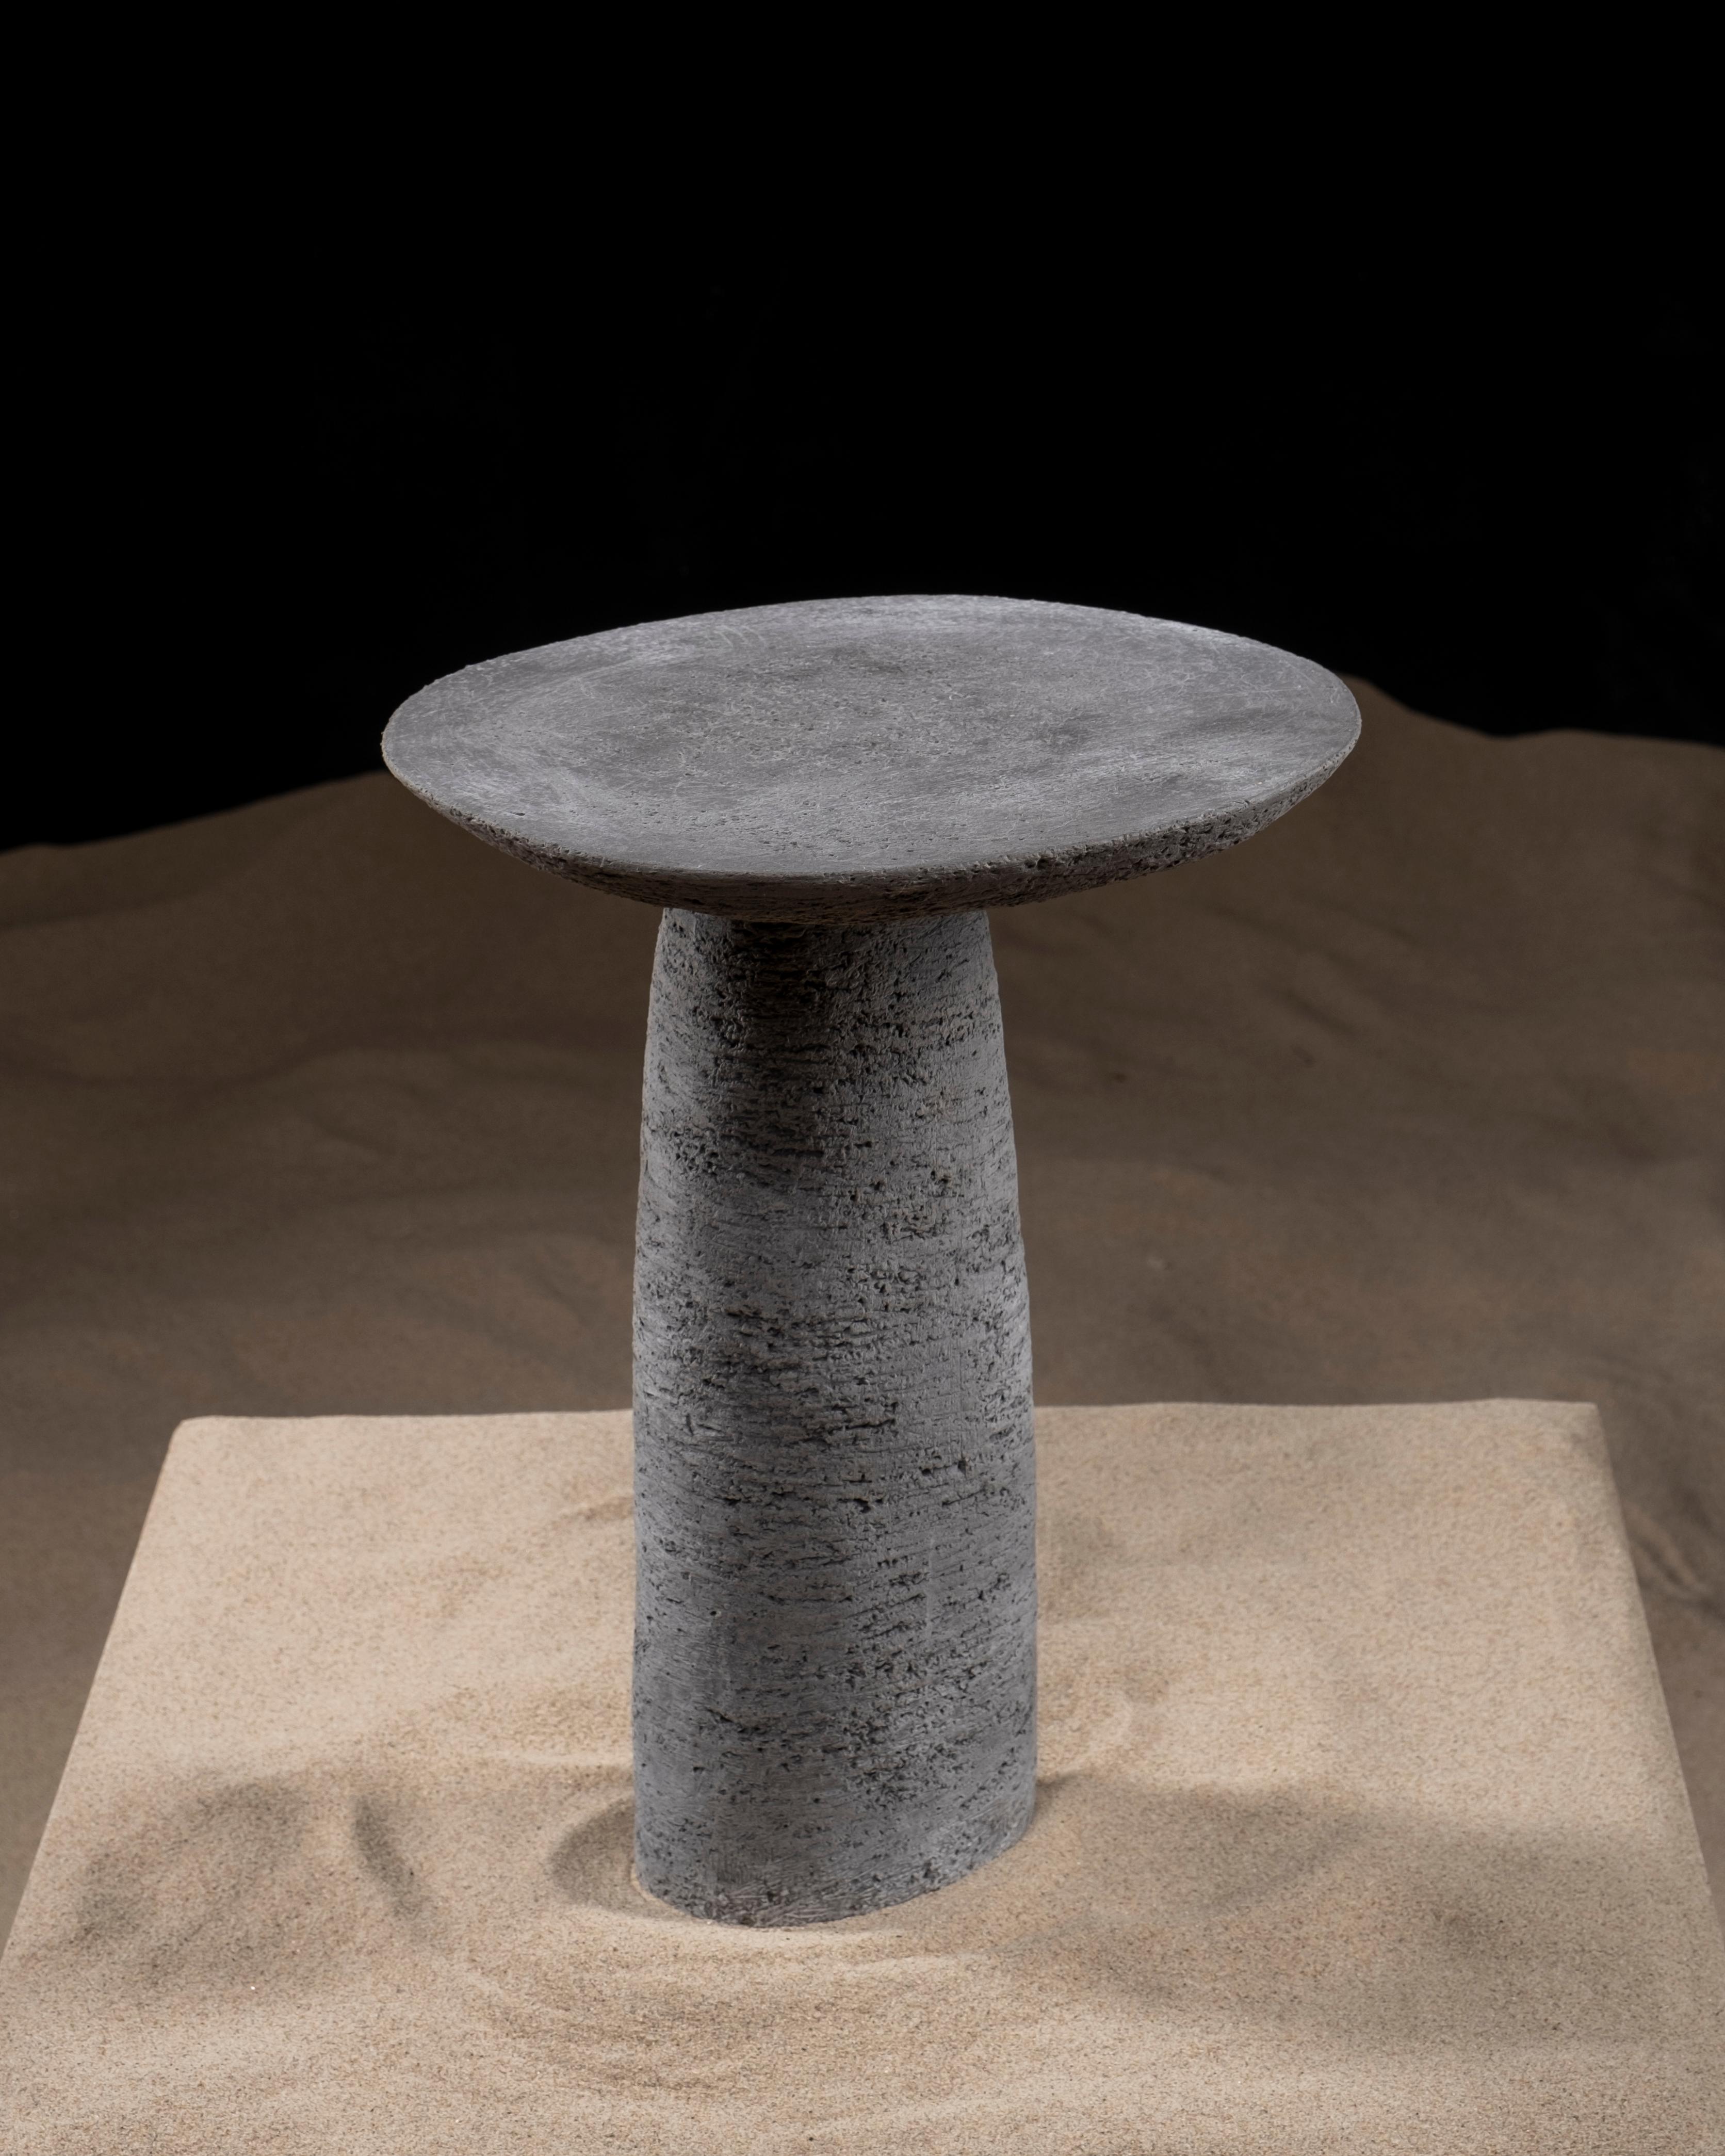 Der Beistelltisch Orbitae ist ein skulpturales Möbelstück aus Keramik. Der Designer ließ sich von der Umlaufbahn und den Wellenbewegungen inspirieren, suchte nach einer physischen Form und wollte mit Orbitae einen Moment des Zyklus einfangen. Sie